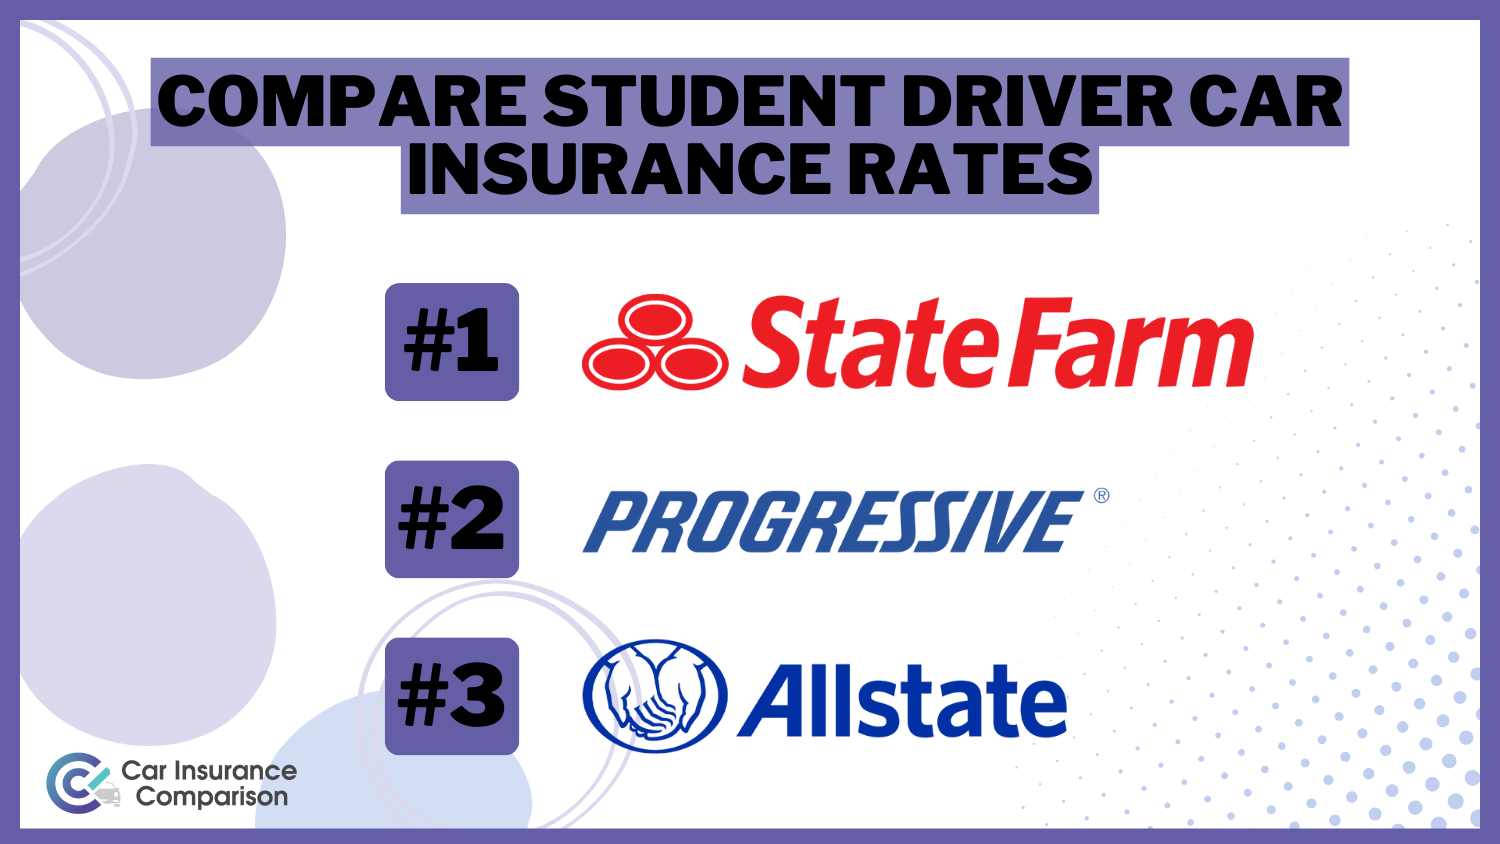 Compare Student Driver Car Insurance Rates: State Farm, Progressive and Allstate